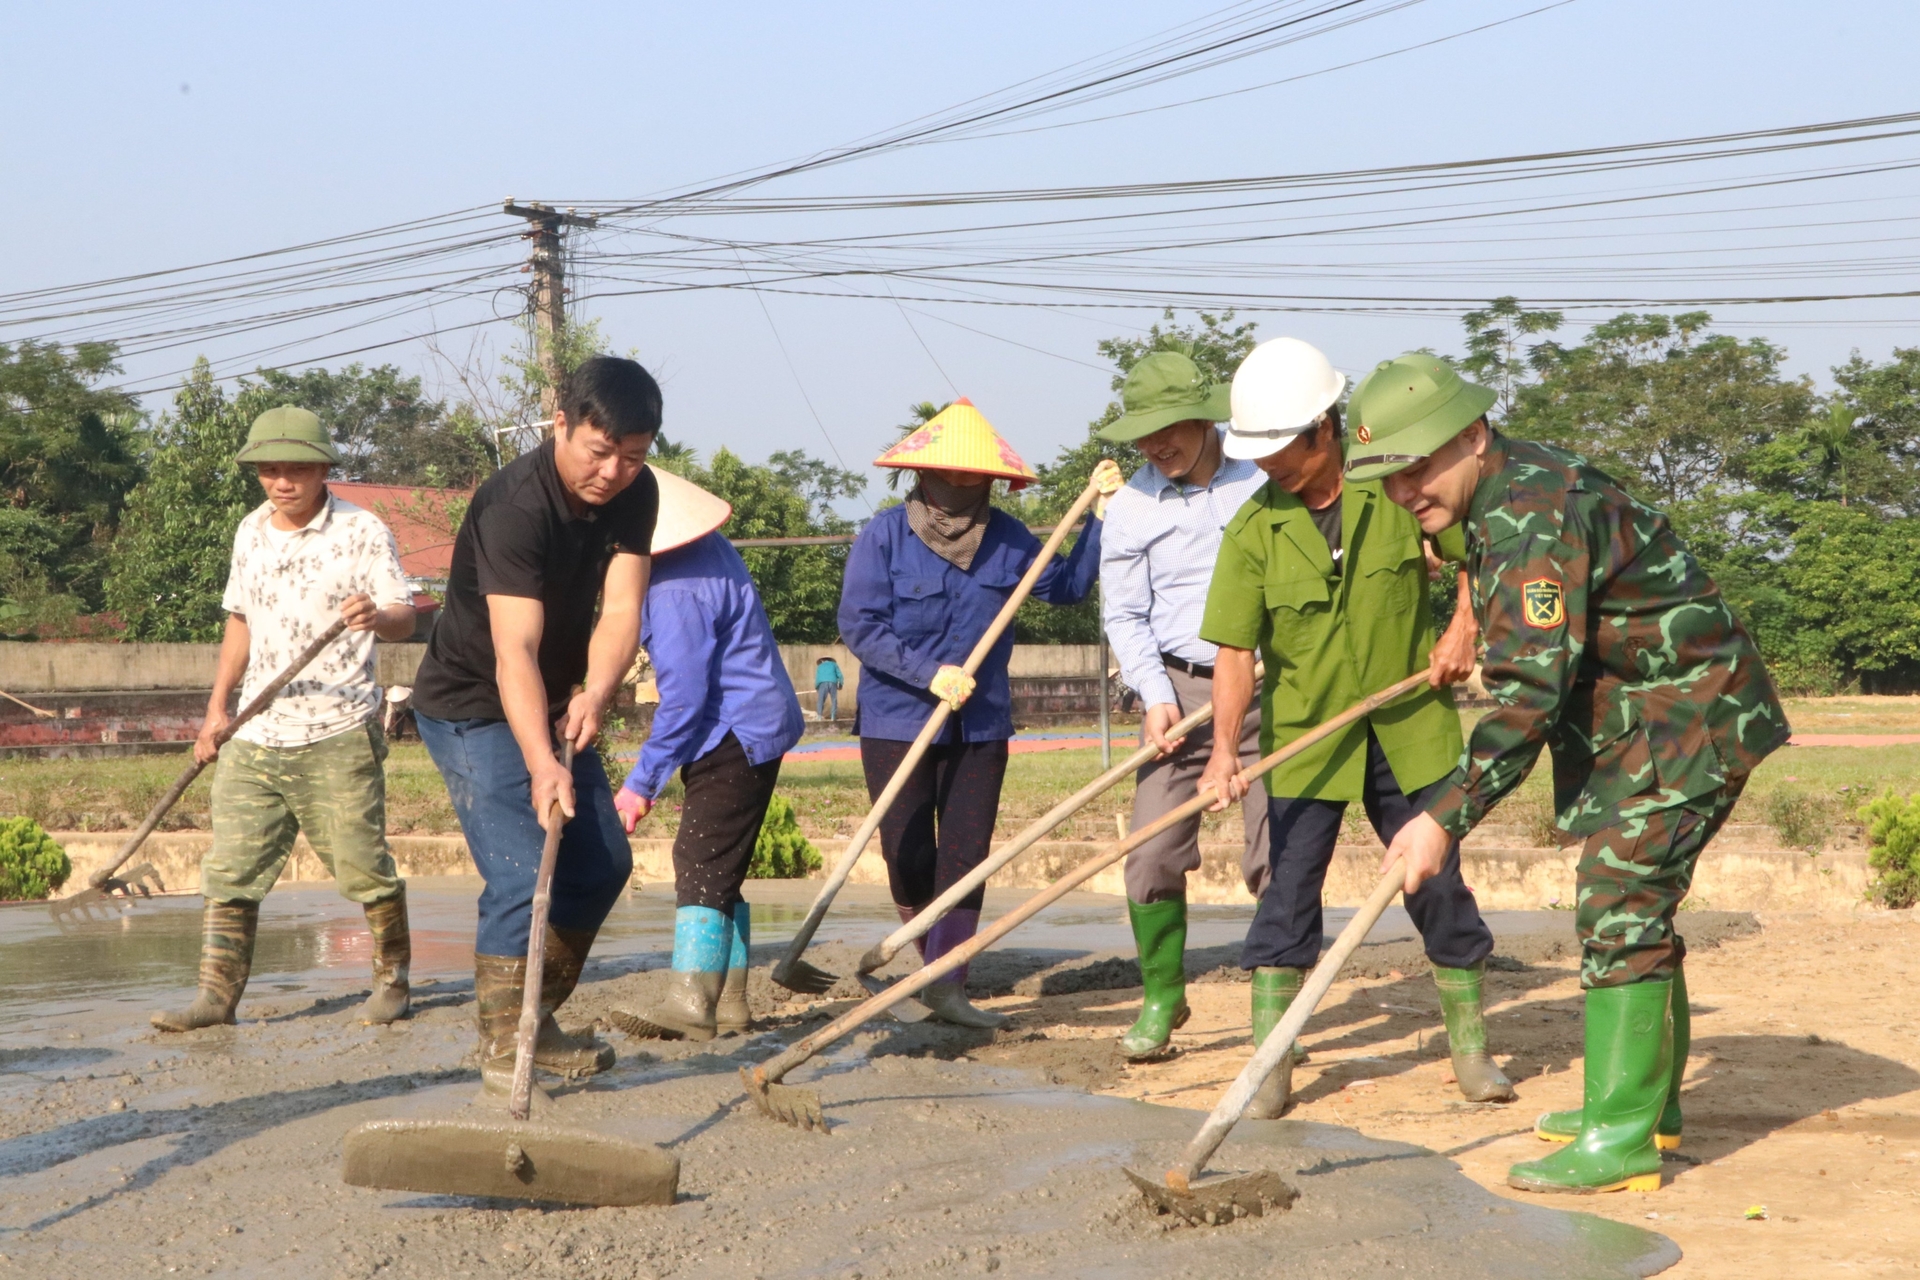 Đồng chí Trần Nhật Tân (ngoài cùng bên phải) - Bí thư Huyện ủy Trấn Yên tham gia lao động Ngày cuối tuần cùng dân làm sân chơi thể thao ở xã Y Can. Ảnh: Thanh Tiến.